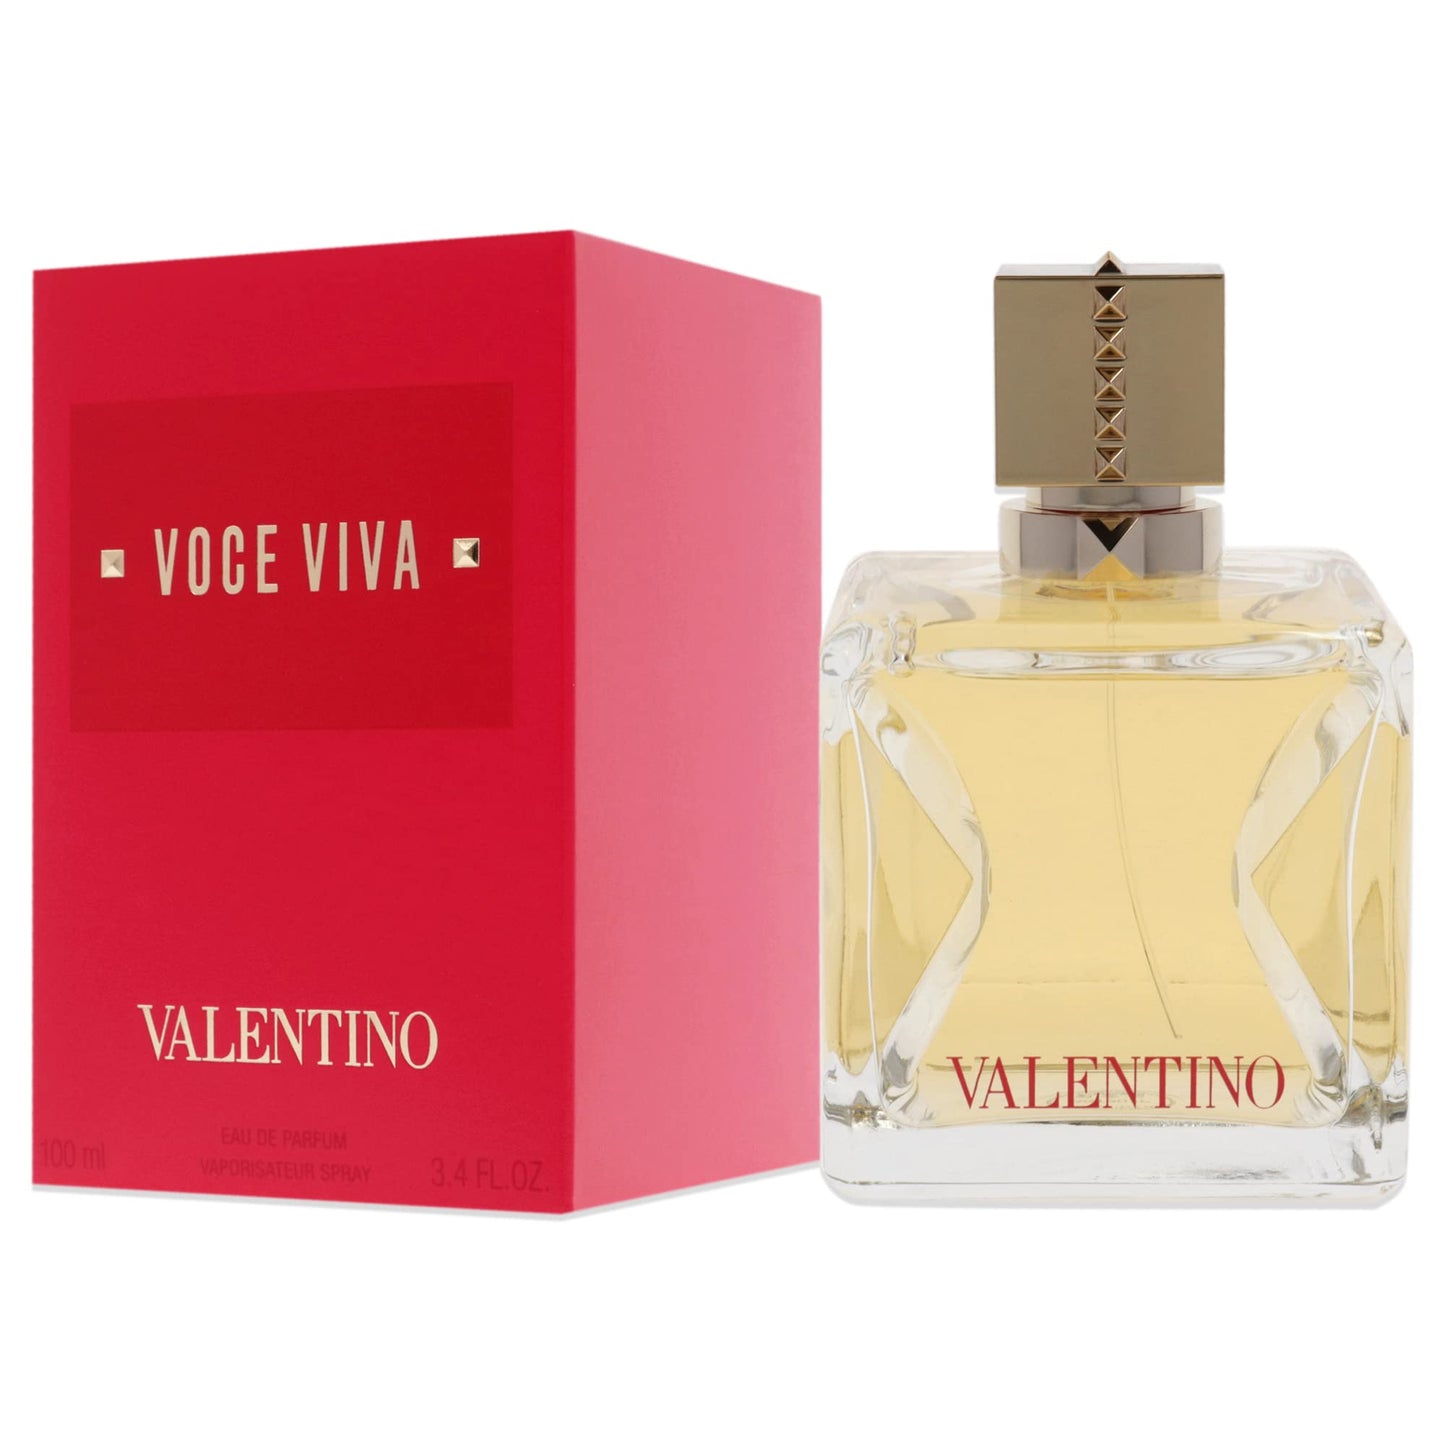 Valentino Voce Viva fragrance for women